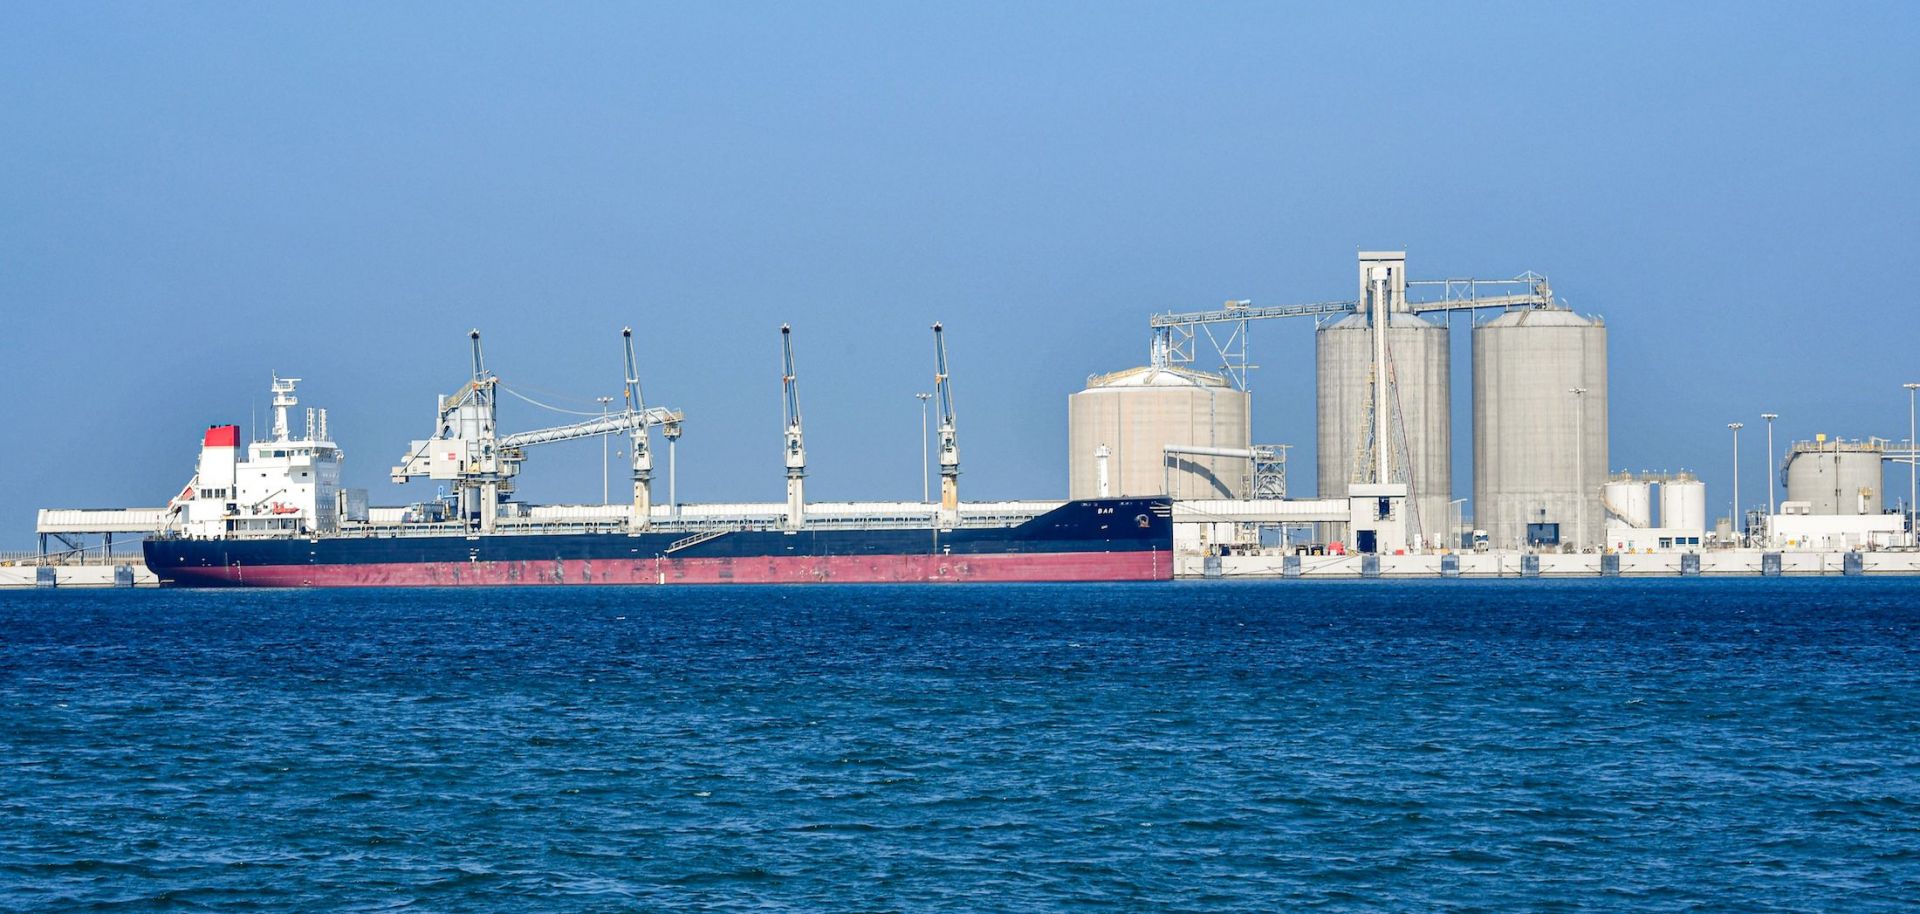 An oil tanker on Dec. 11, 2019, at the port of Ras al-Khair, Saudi Arabia.